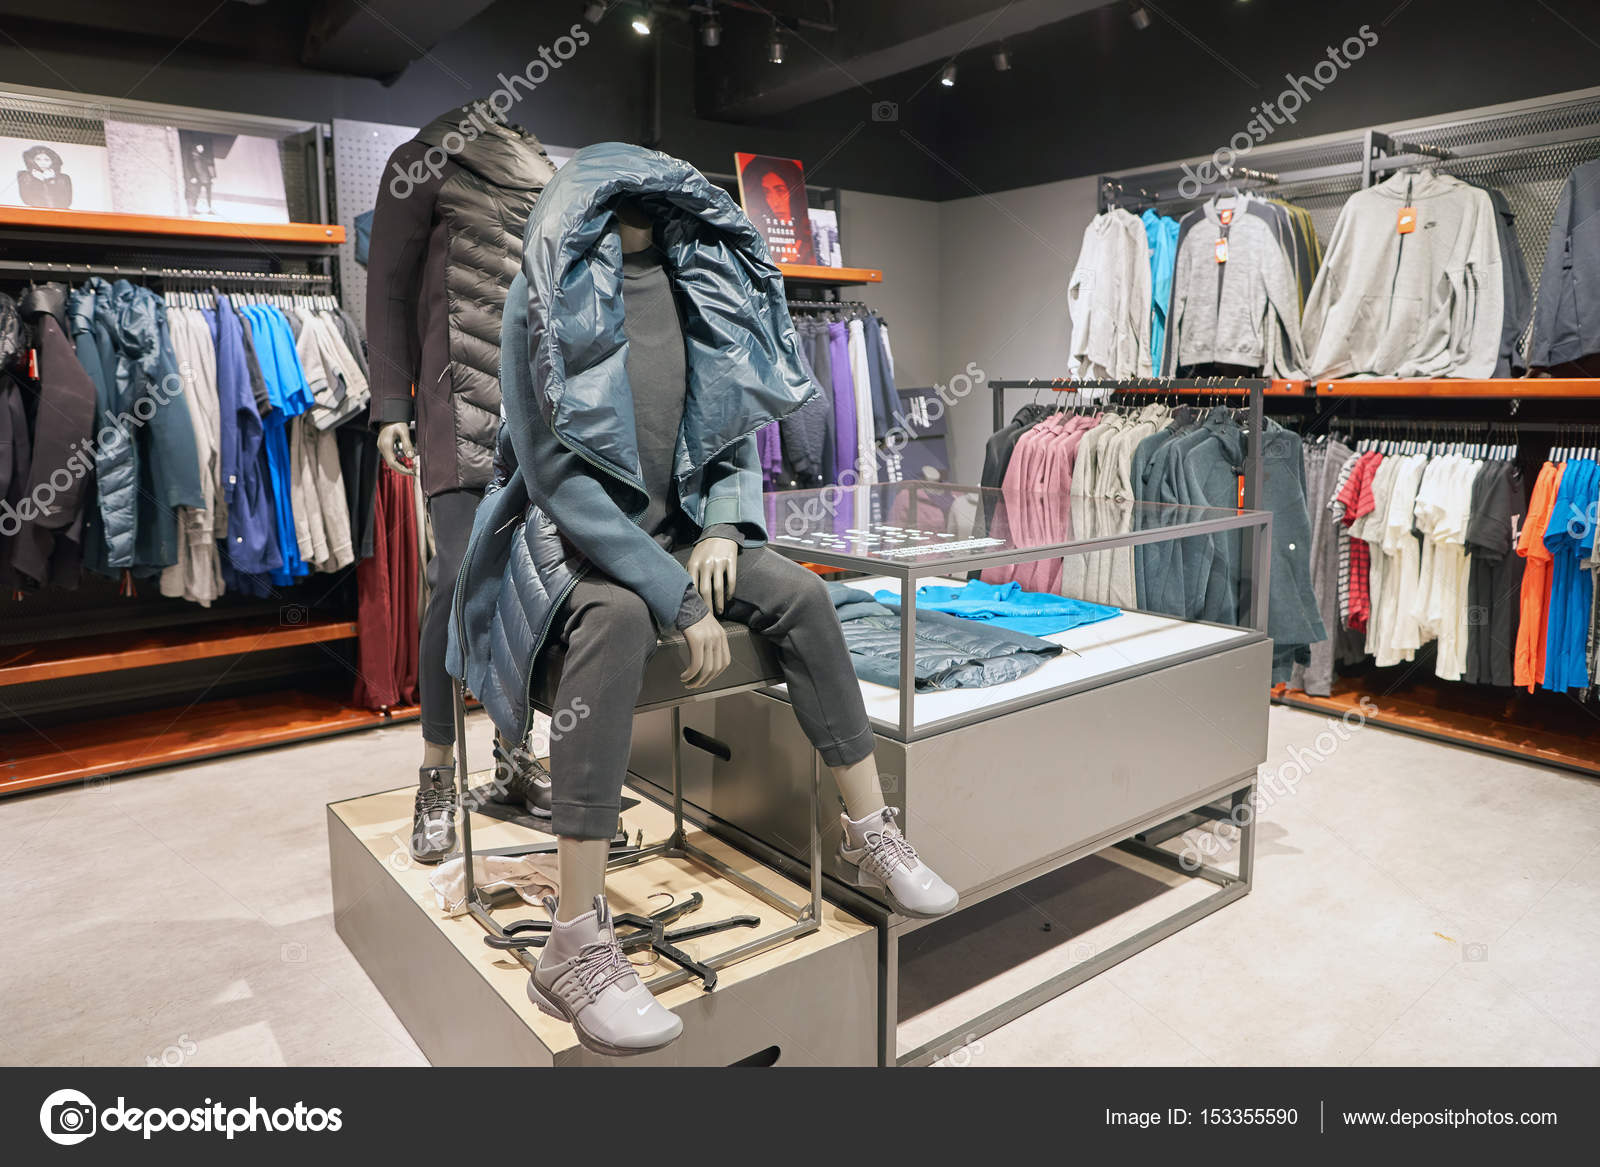 Tienda Nike en — Foto editorial de stock © #153355590